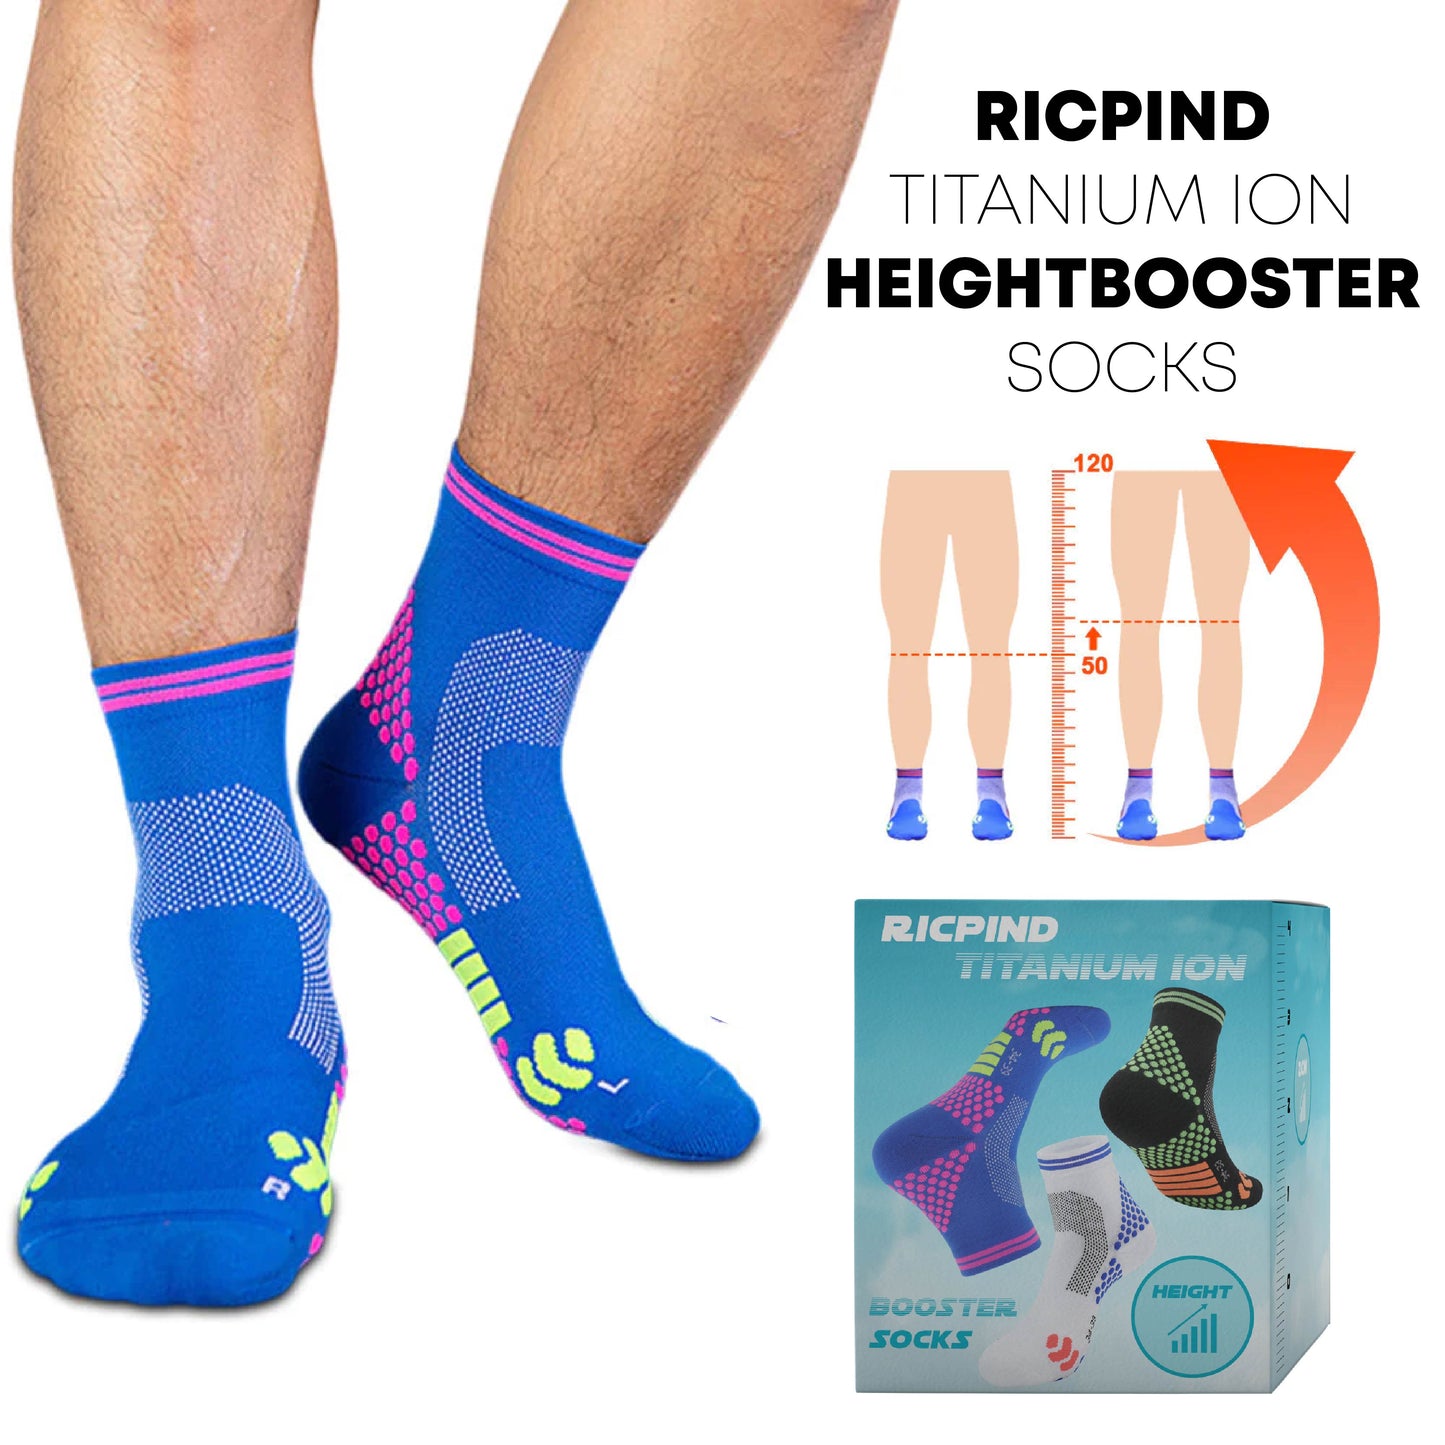 Ricpind Titanium Ion HeightBooster Socks